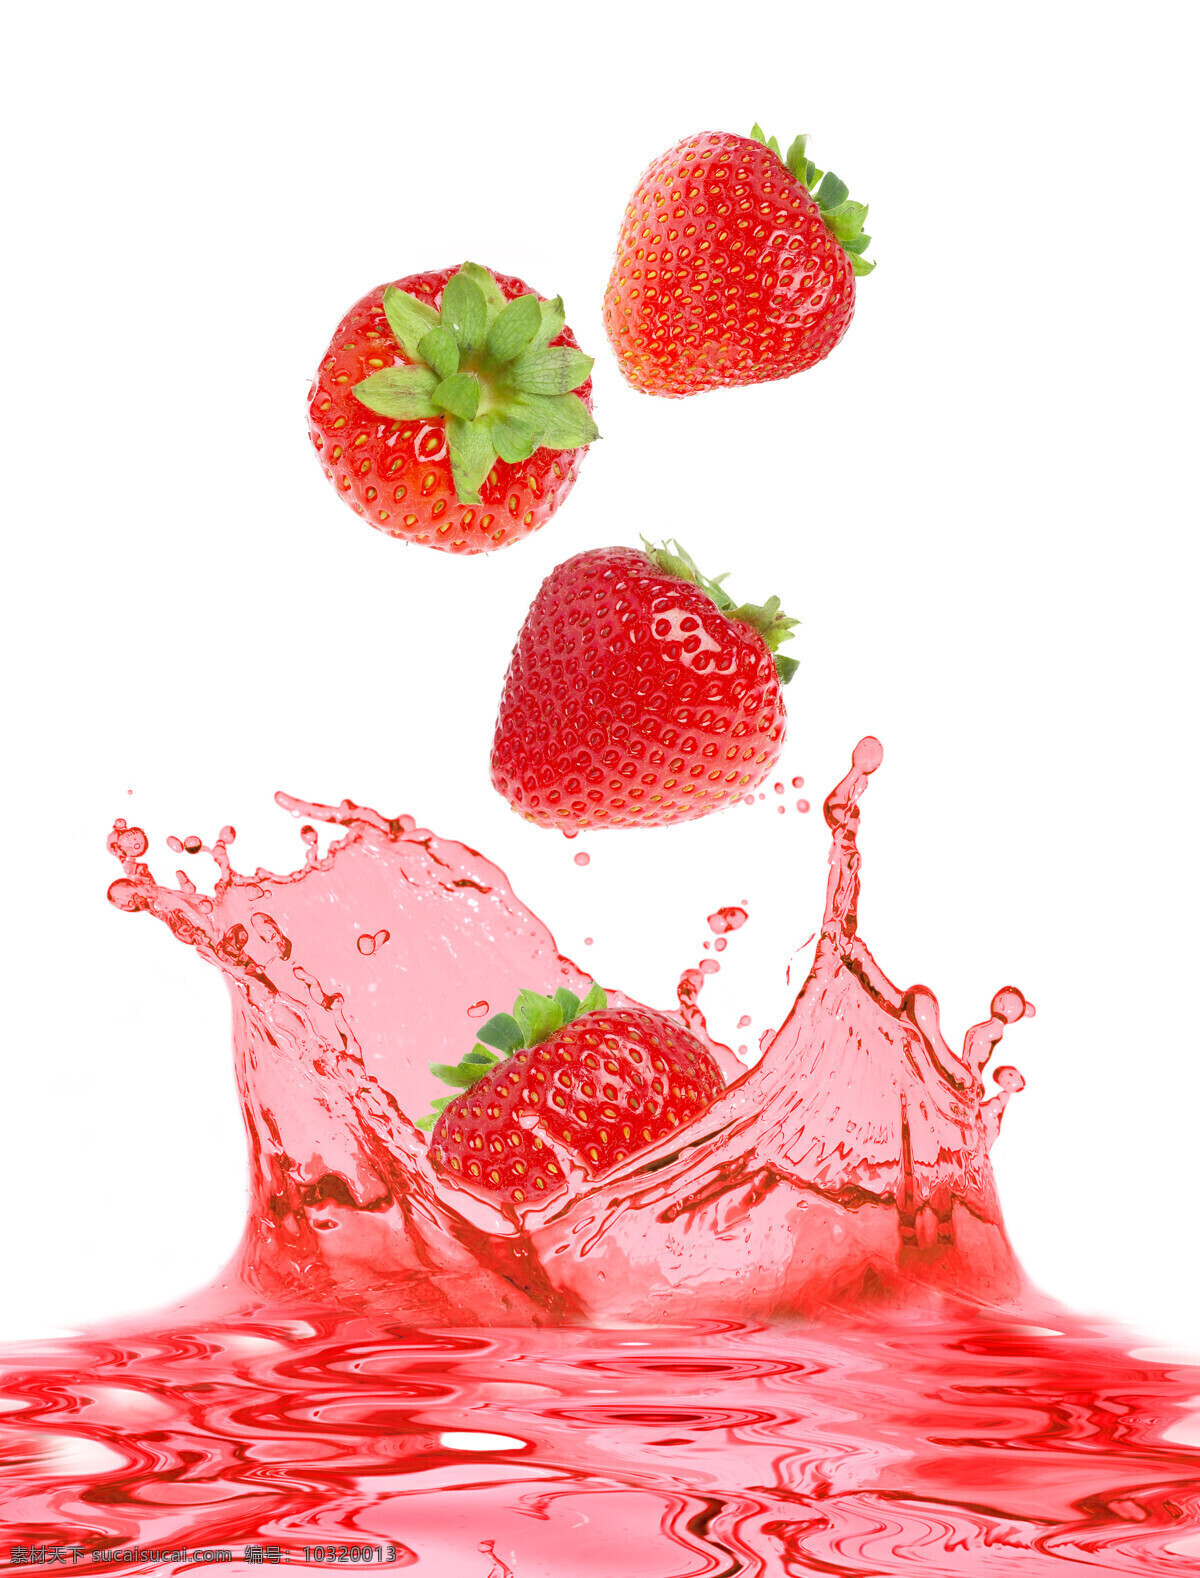 草莓 山莓 野果 浆果 蓝莓 水果 草莓特写 水果主题 绿叶 新鲜草莓 蔬菜水果 生物世界 蔬菜 水果高清图片 好看的水果